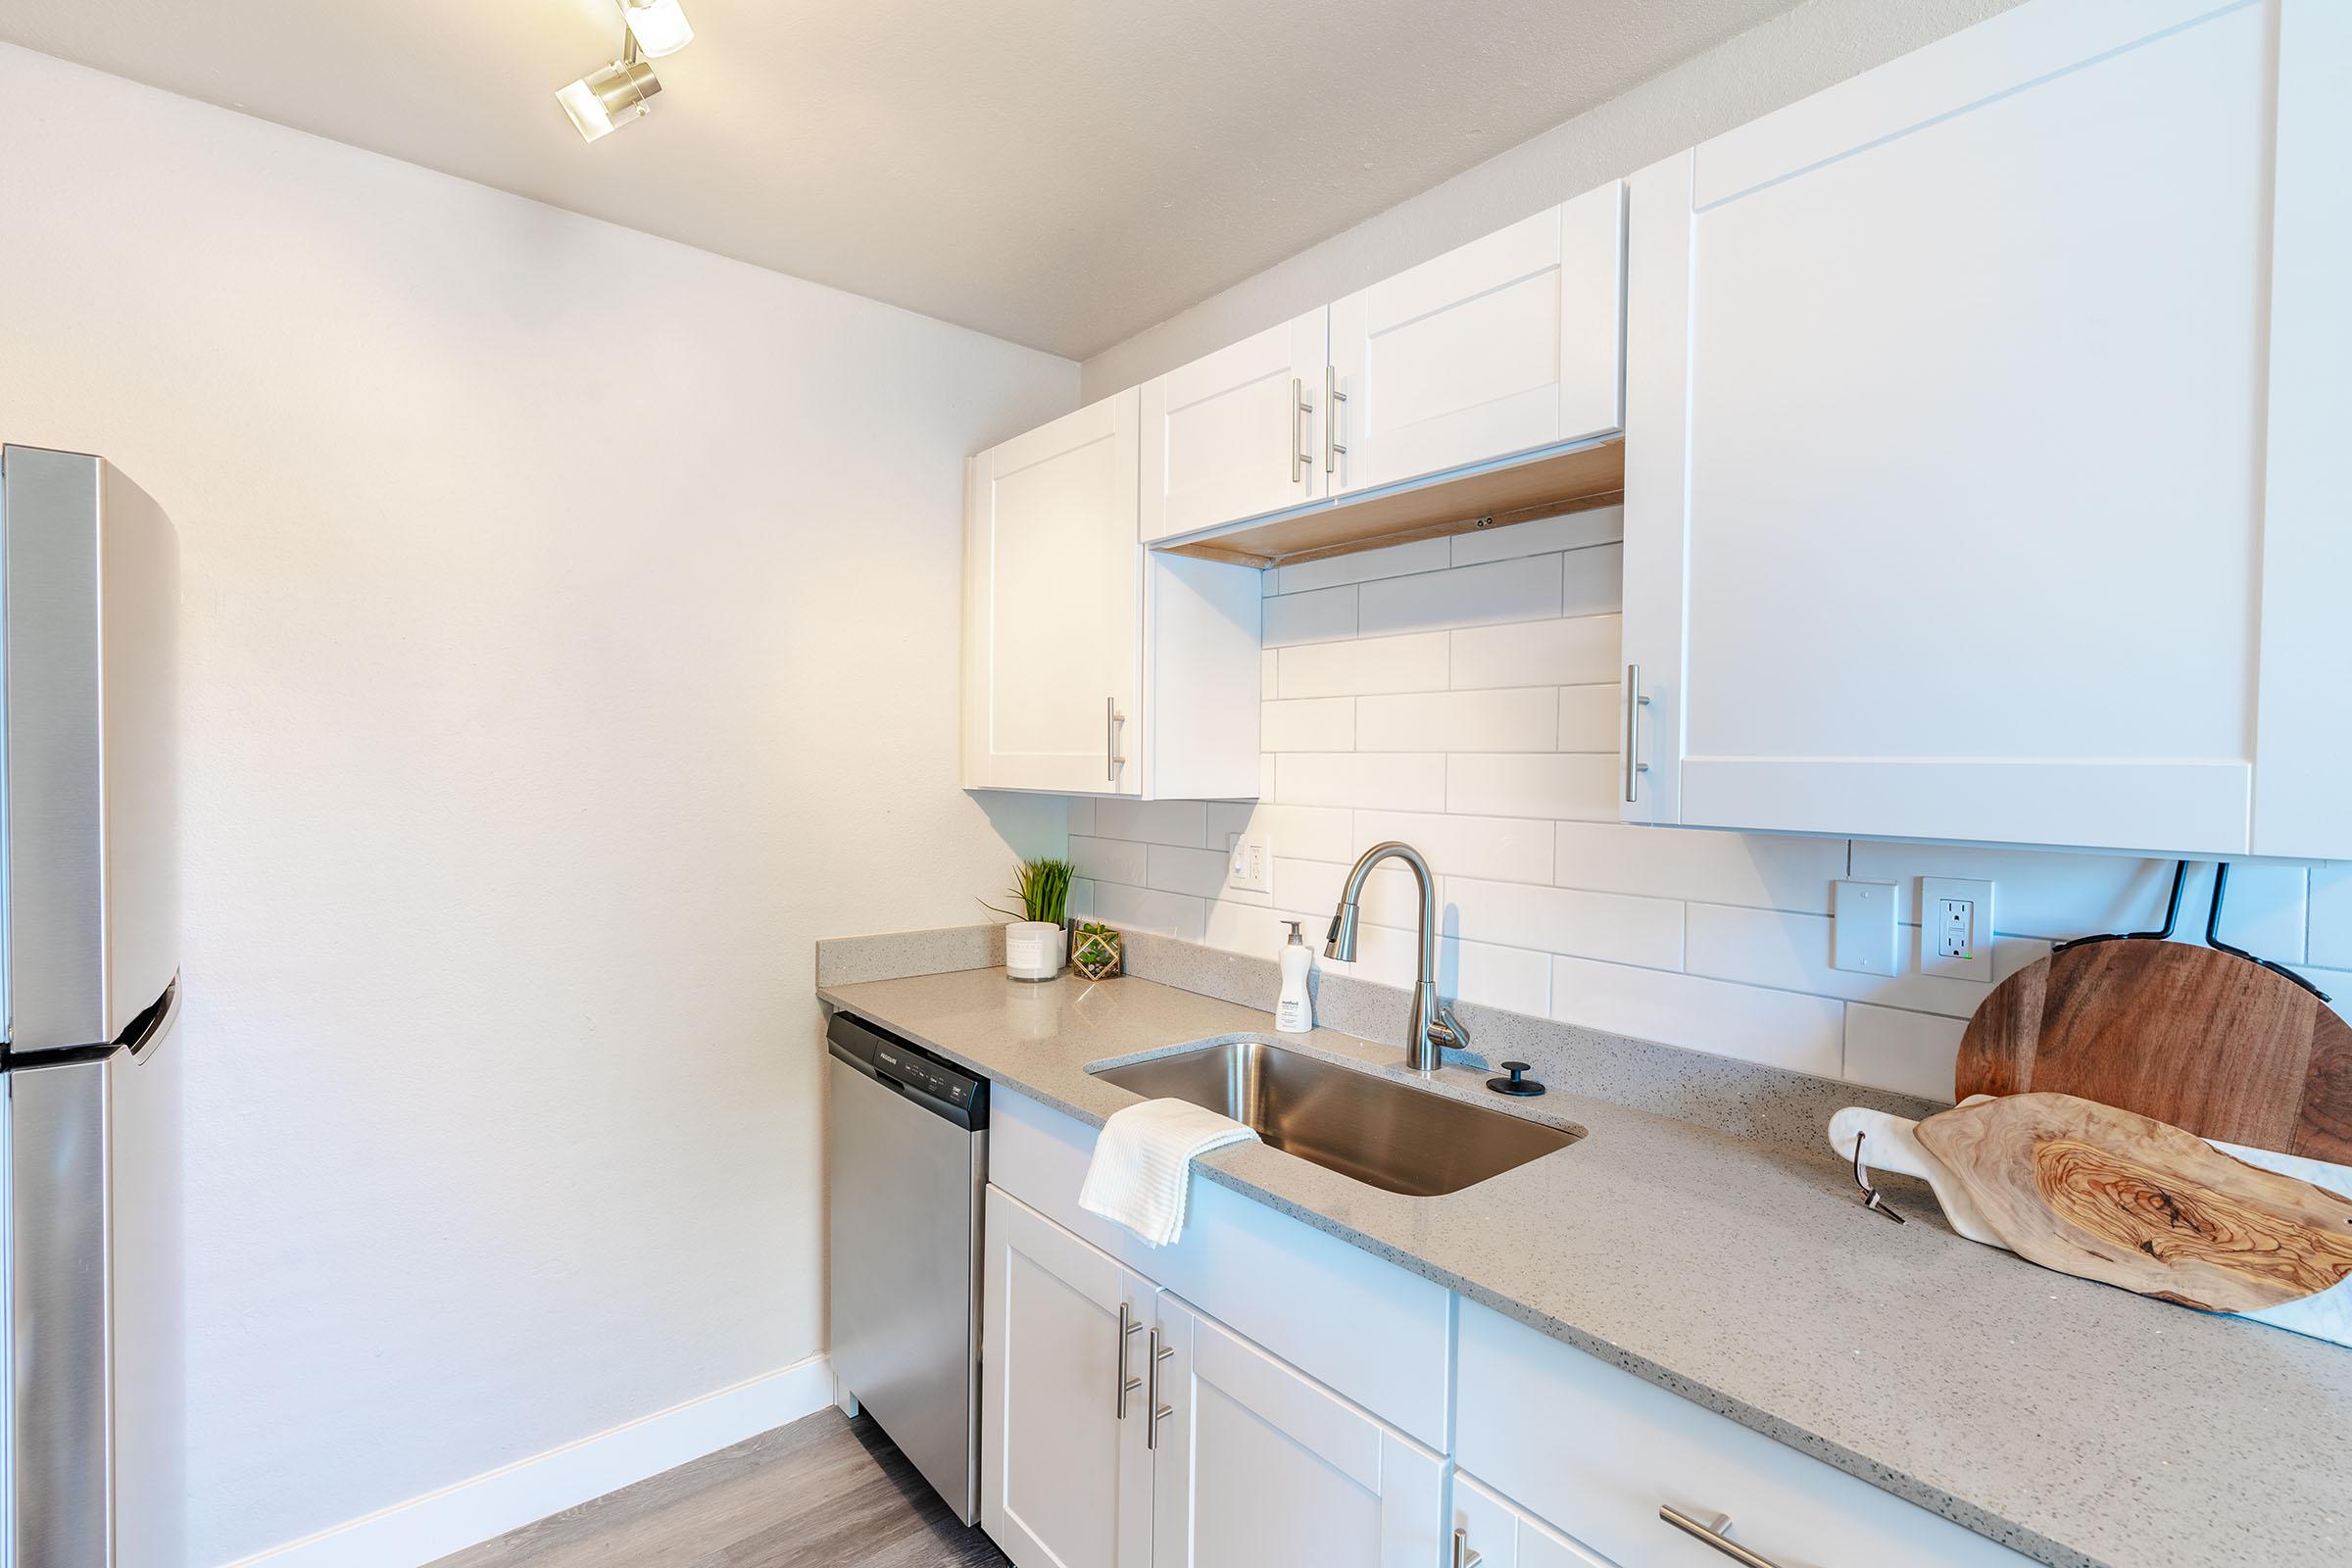 White kitchen cabinets over white tile backsplash and grey quartz countertops